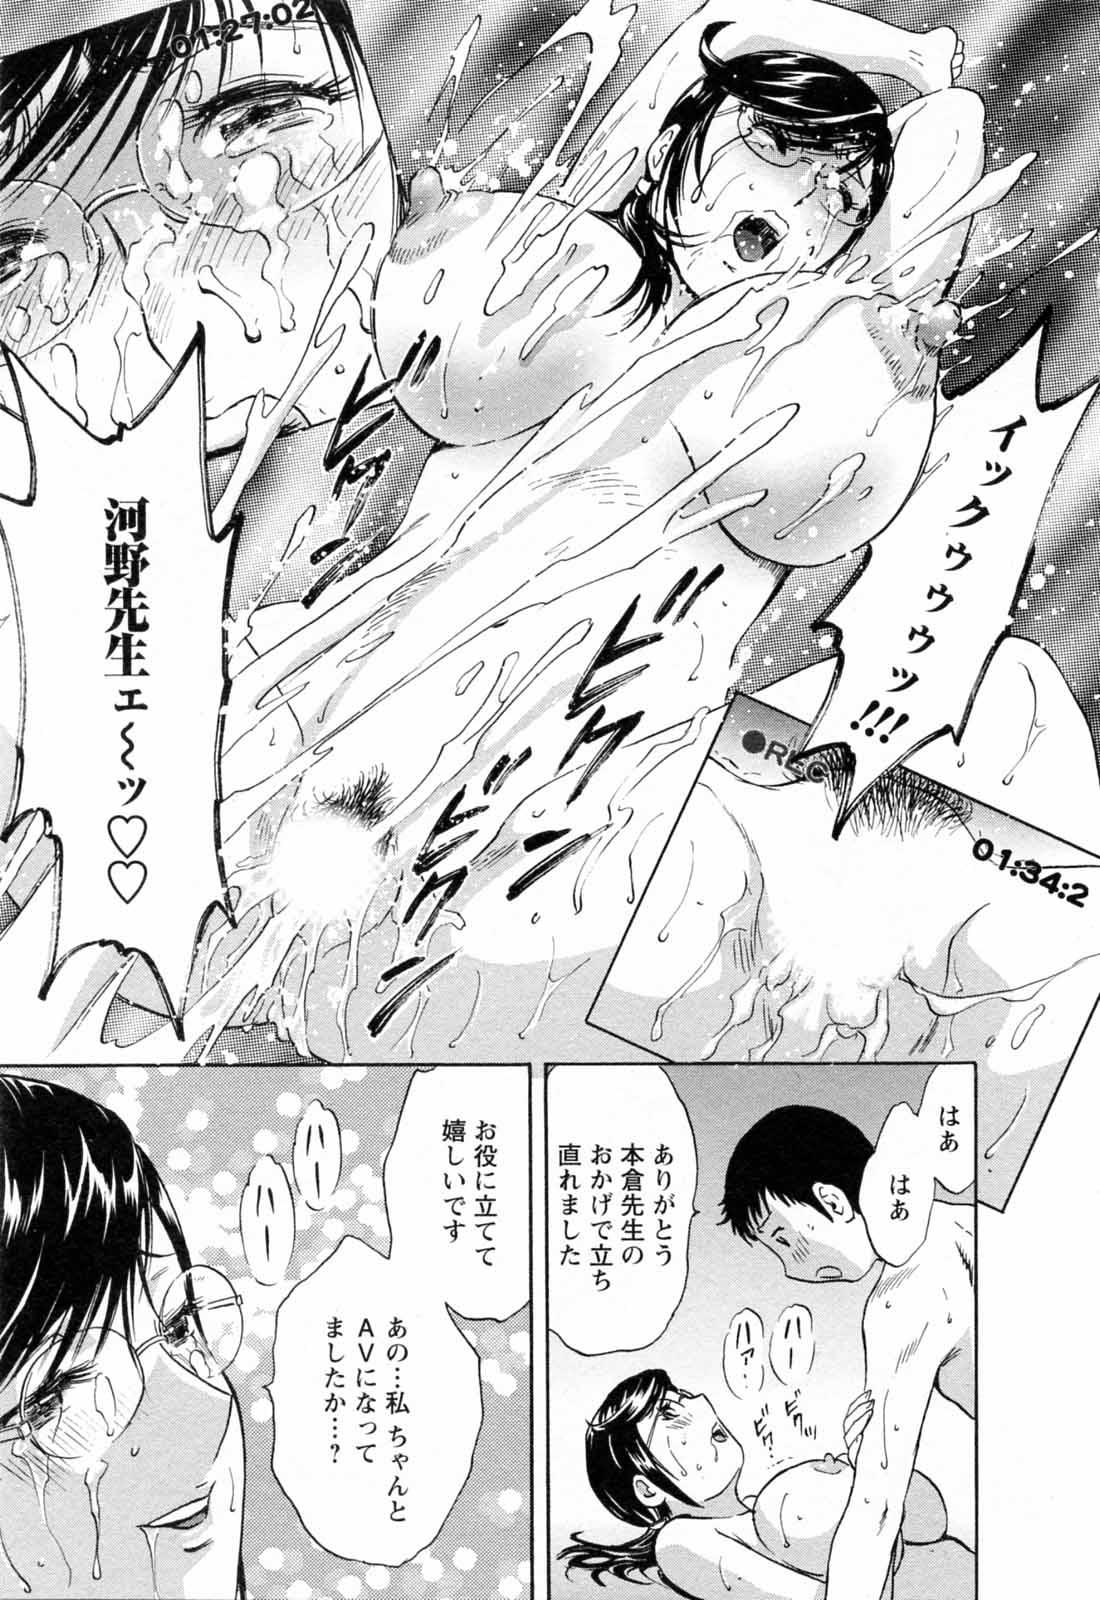 [Hidemaru] Mo-Retsu! Boin Sensei (Boing Boing Teacher) Vol.5 112